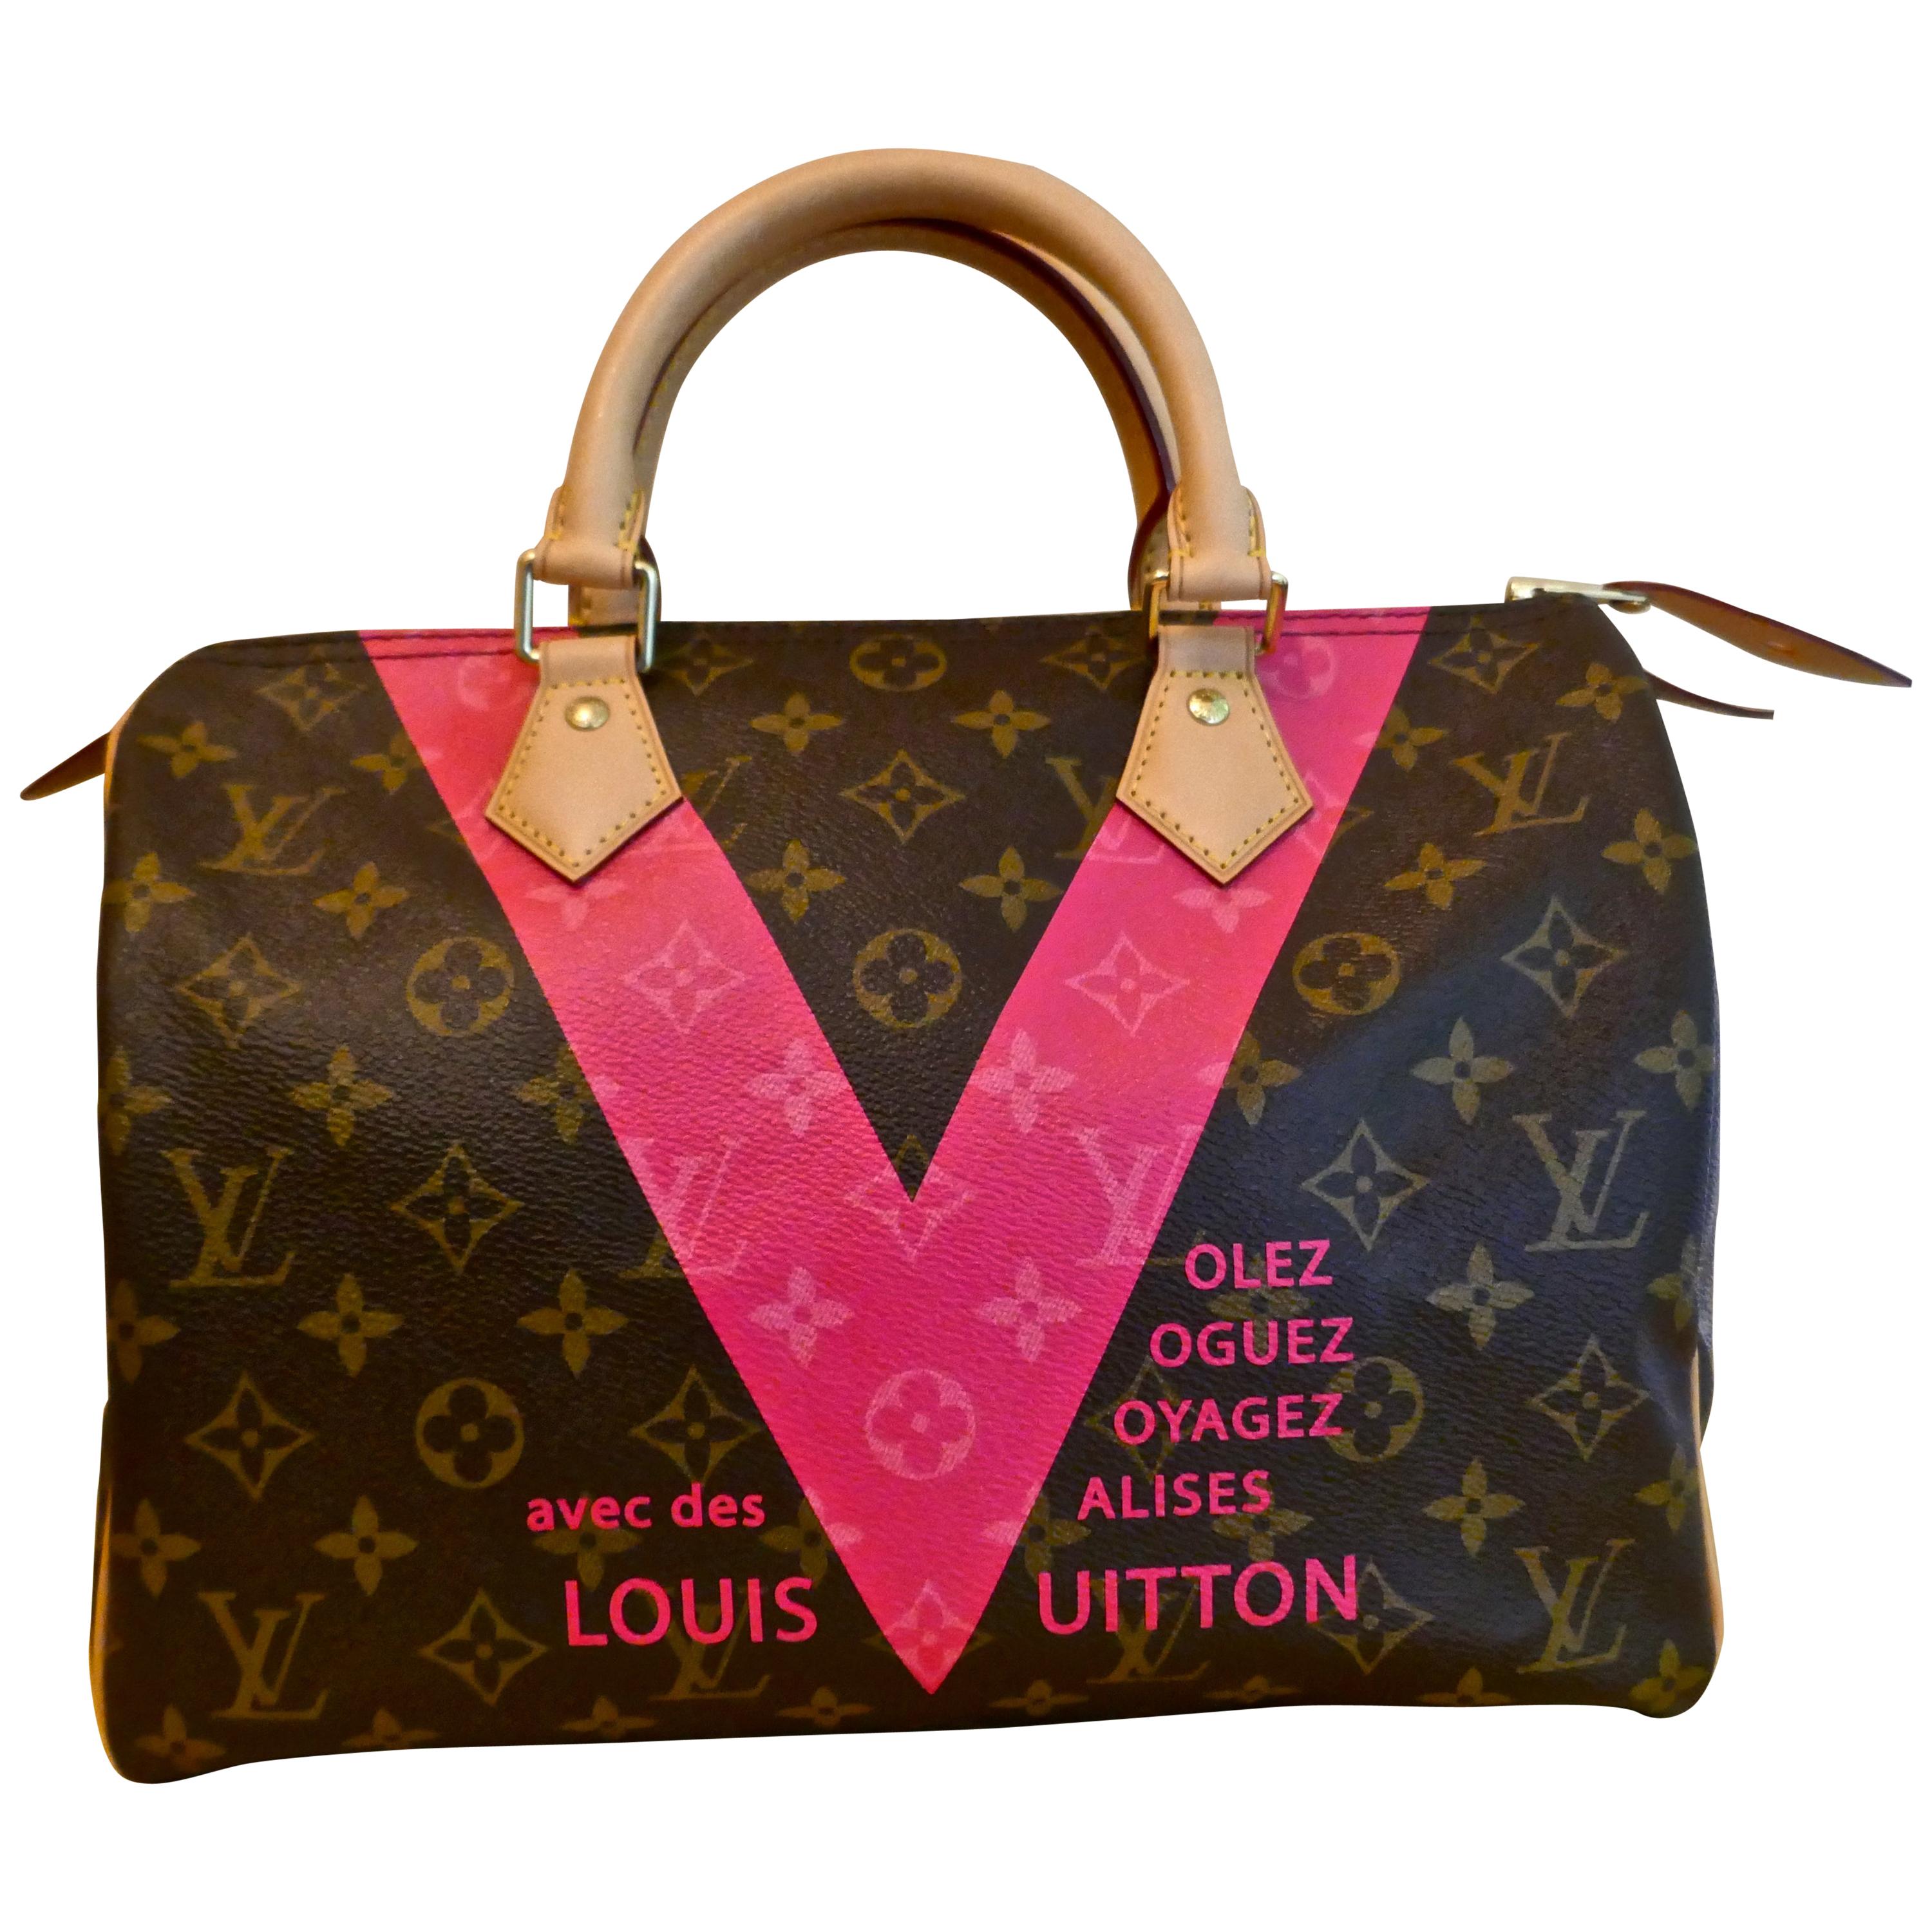 Louis Vuitton Speedy 30 Limited Edition Grenade V Monogram Handbag.